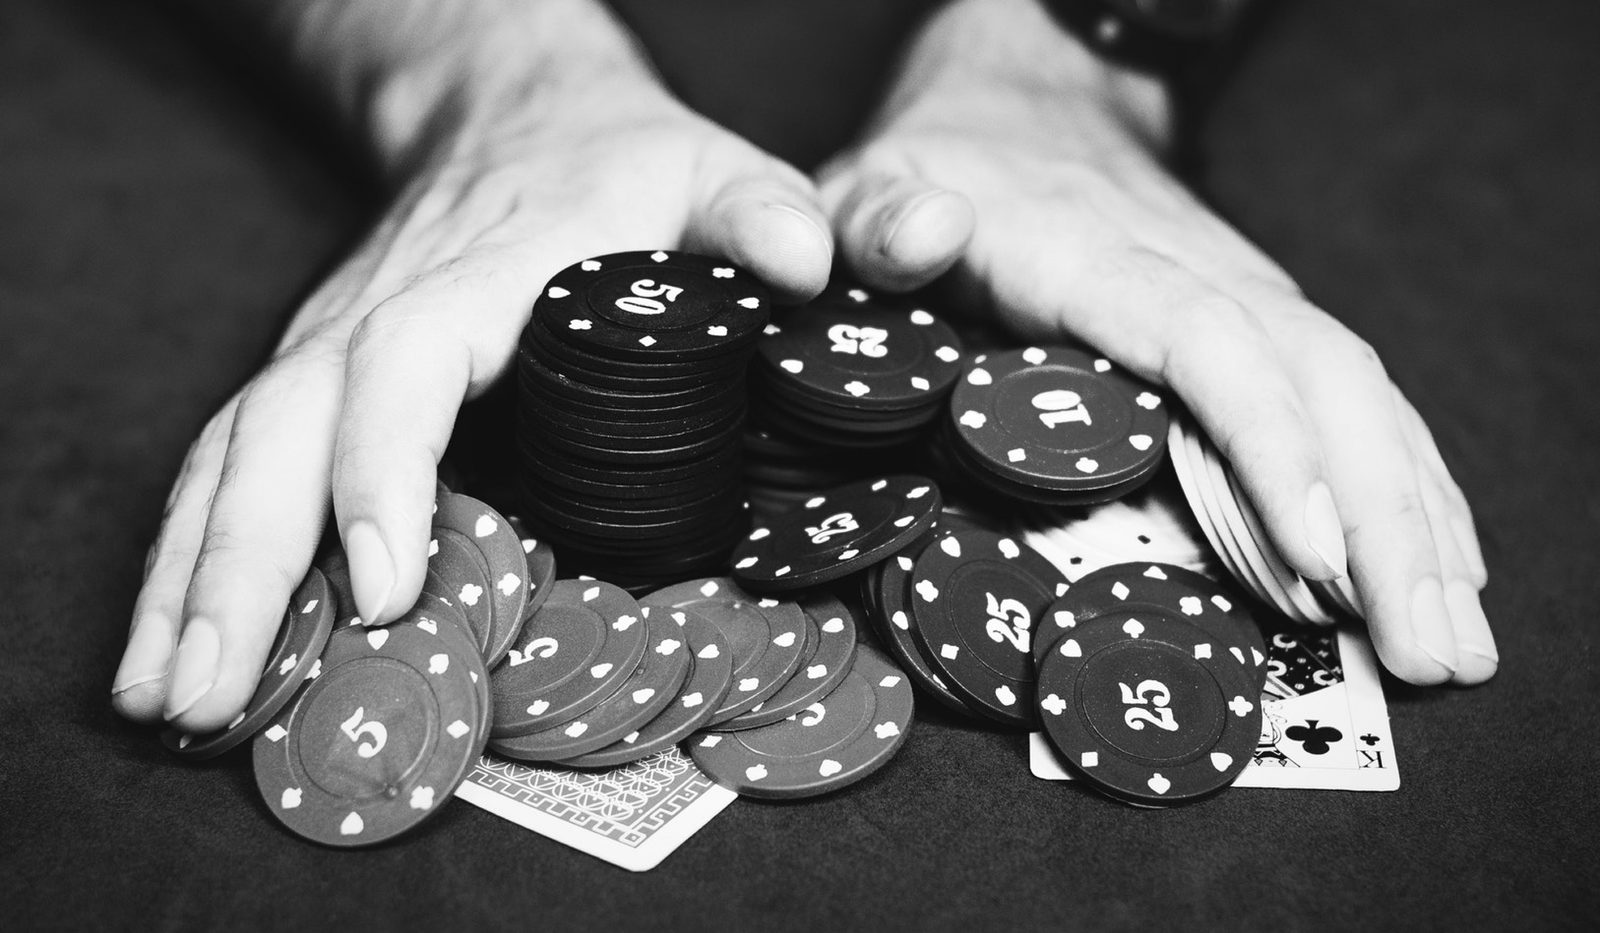 'Perdí más de 2 millones de pesos apostando en casinos'